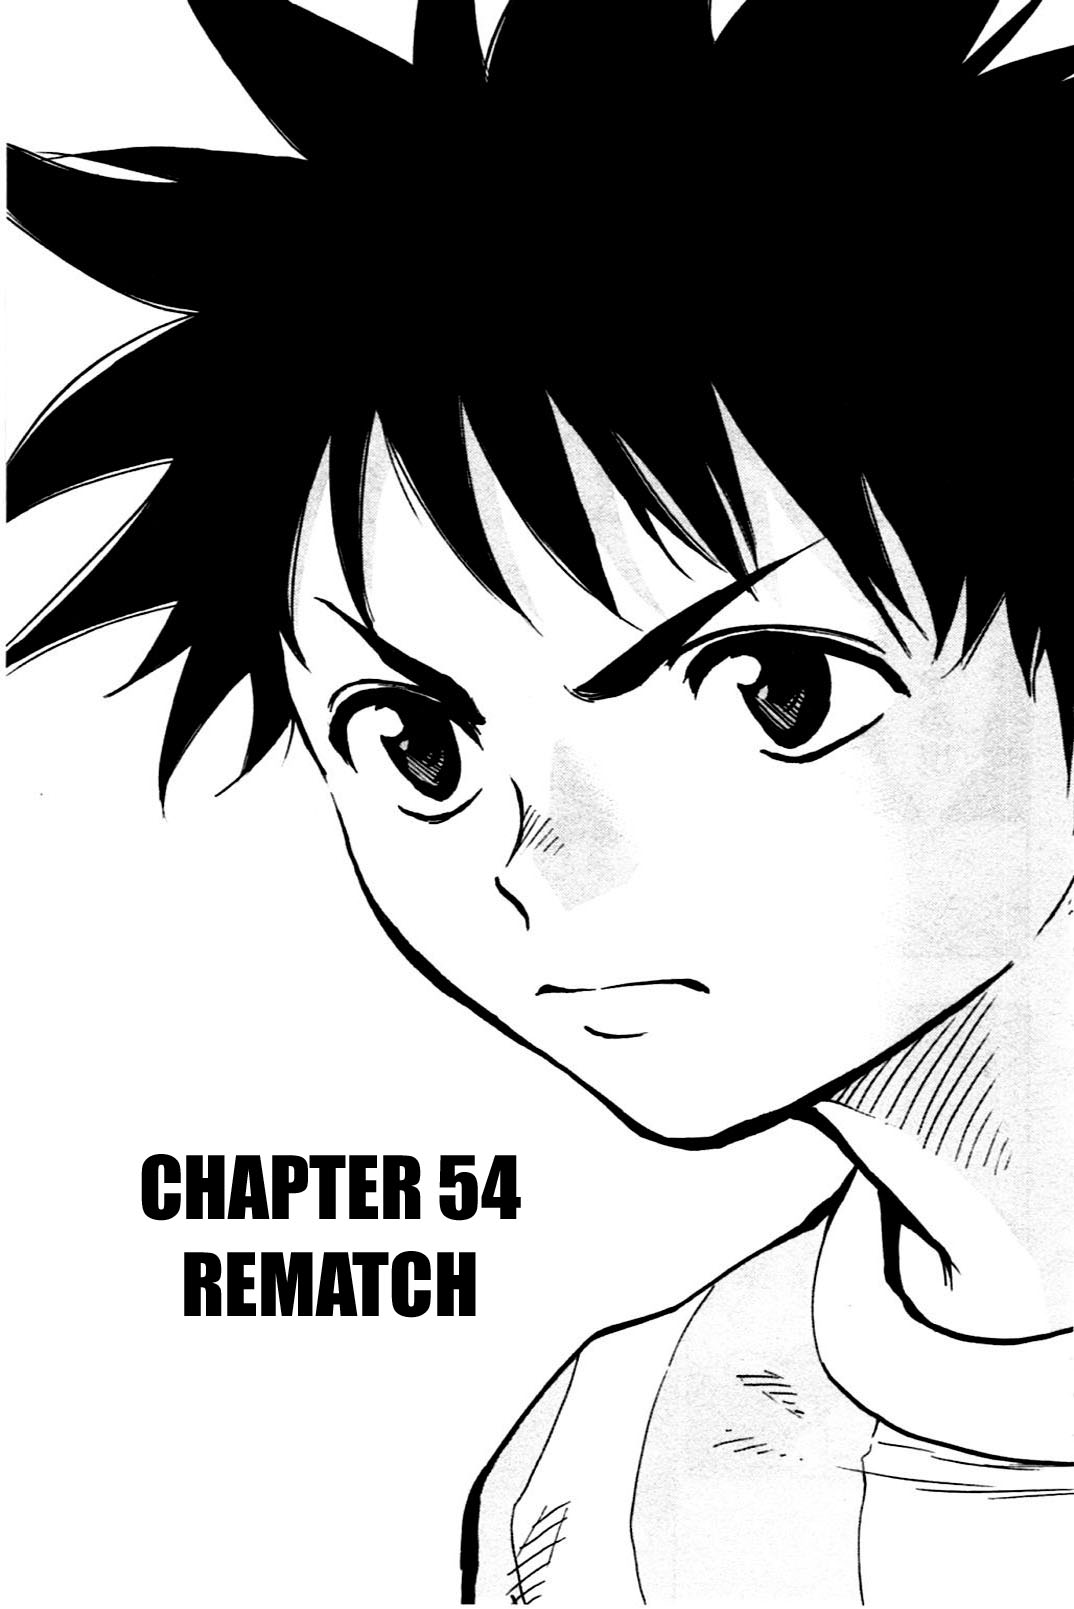 BE BLUES ~Ao ni nare~ Vol. 6 Ch. 54 Rematch